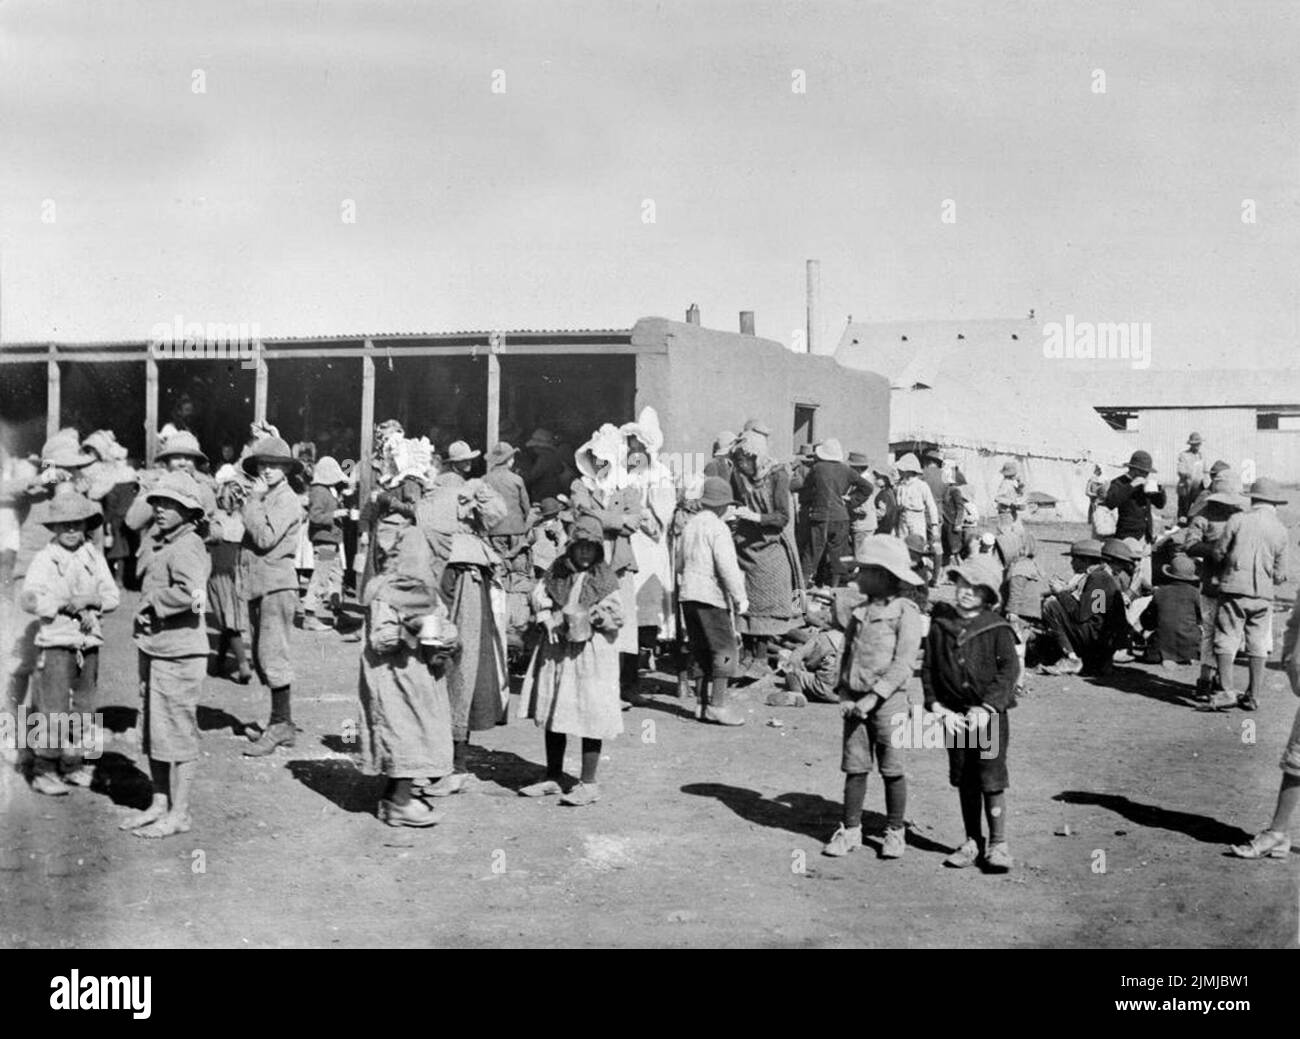 Las mujeres y los niños Boer en uno de los campos de concentración se establecieron para albergar a los Boers después de que fueron expulsados de sus hogares como parte de la política de tierra quemada de Lord Kitchener en el Transvaal. Foto de stock